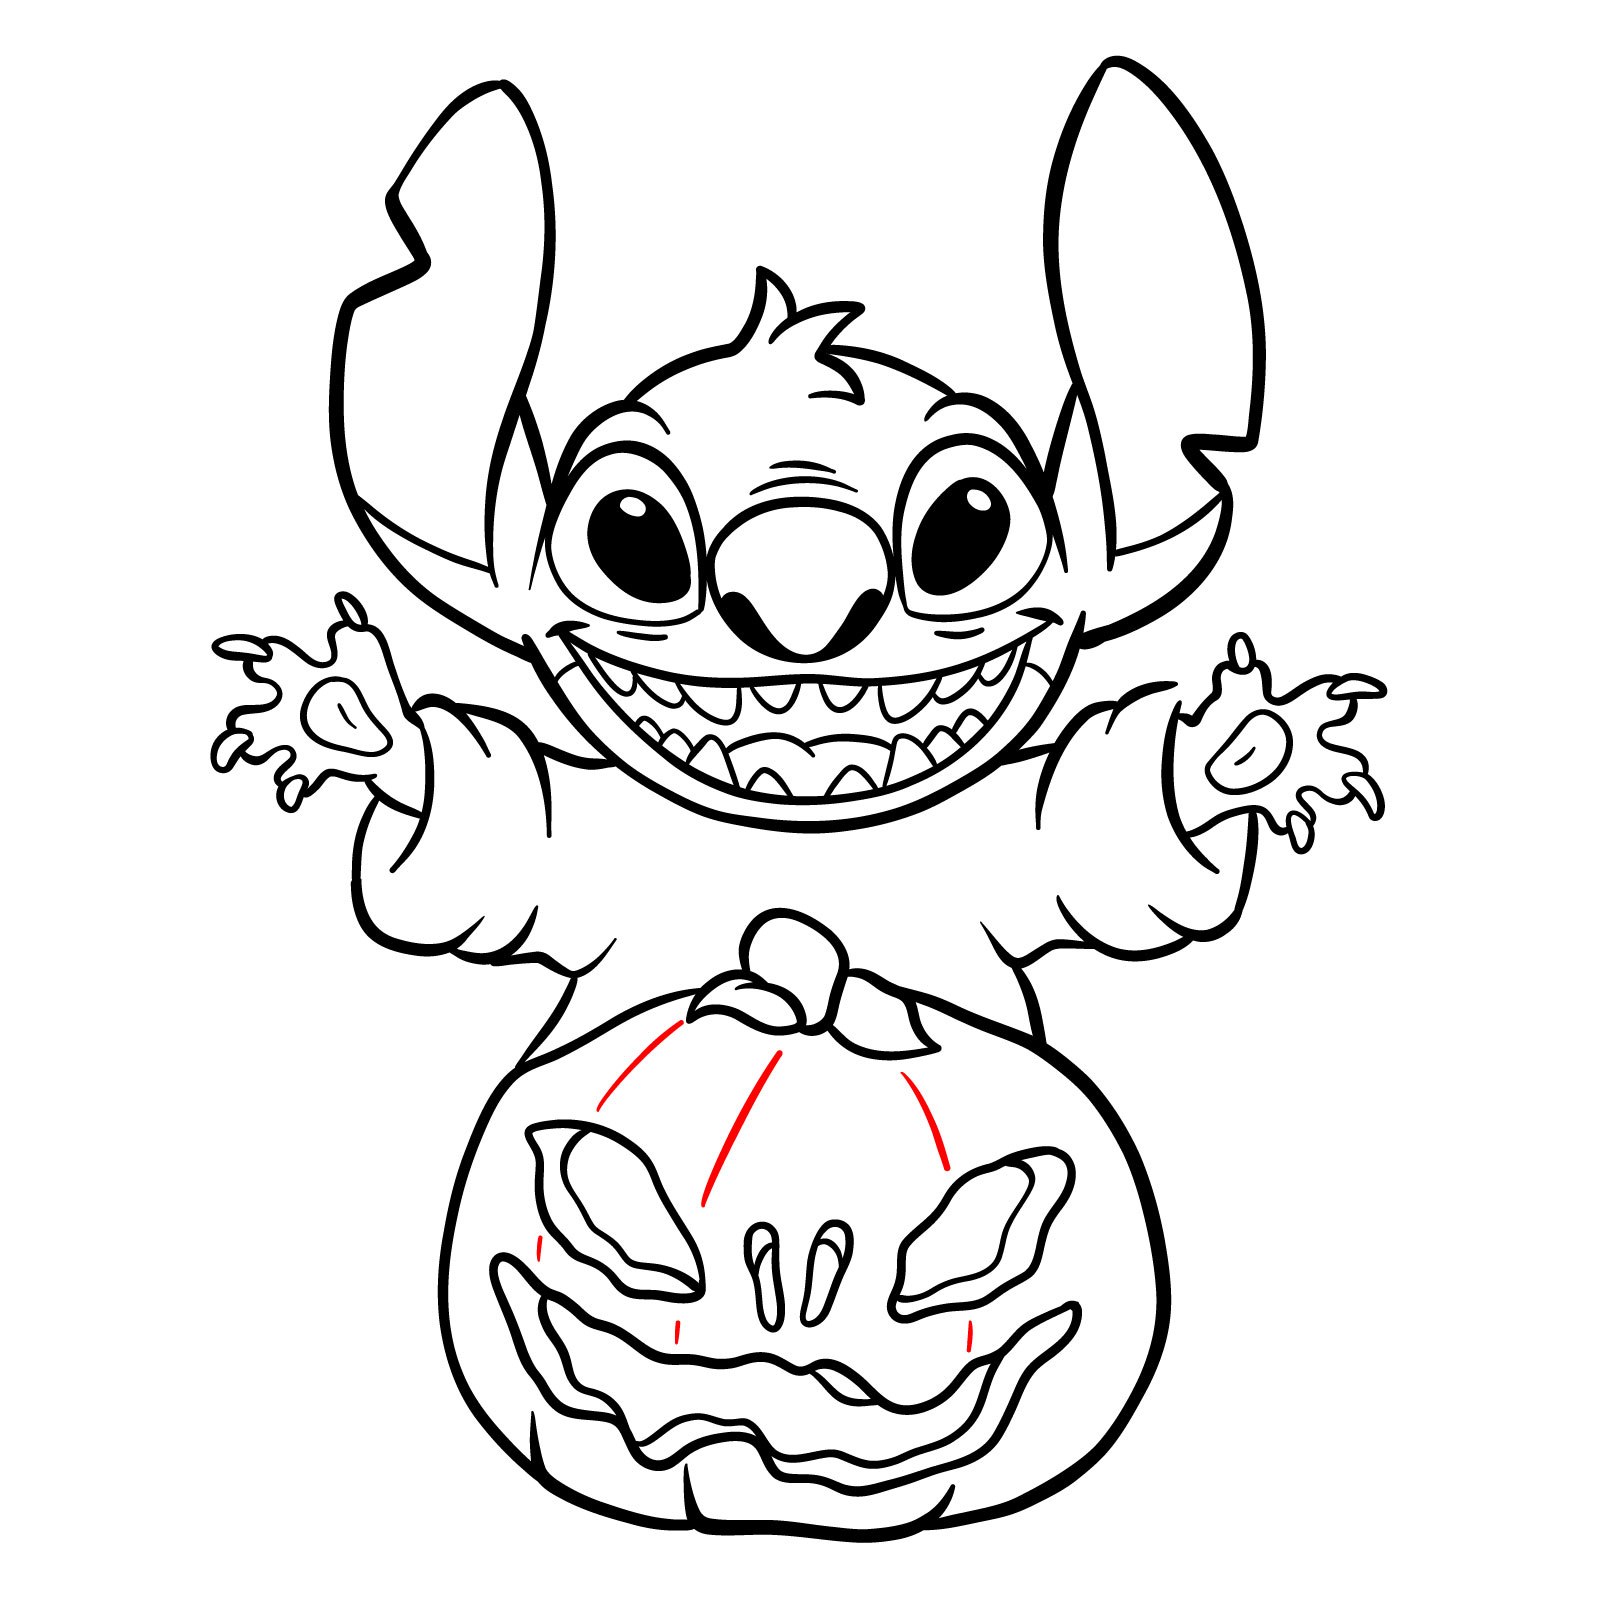 How to Draw Halloween Stitch with a jack-o'-lantern - step 28